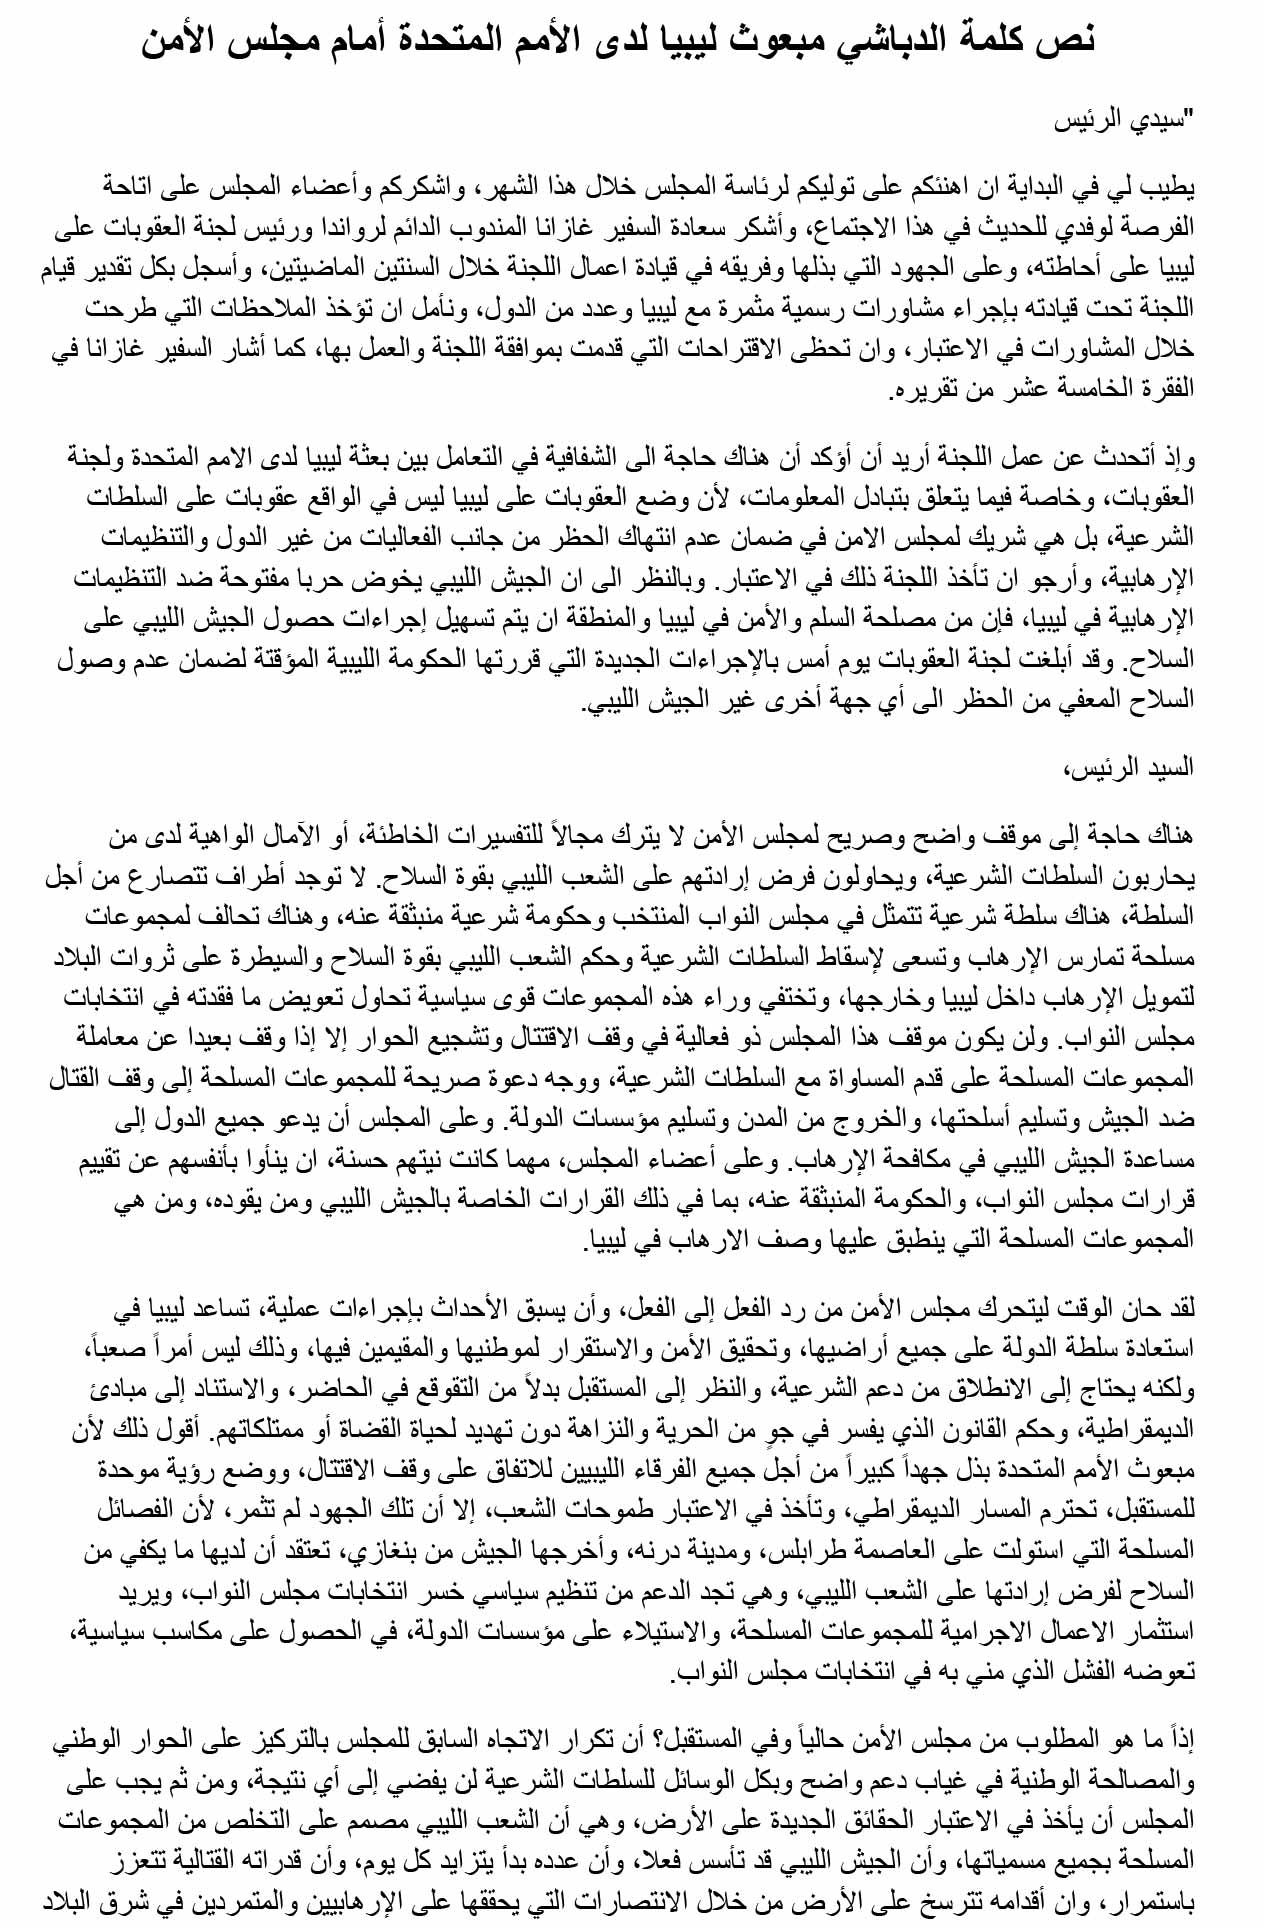 الدباشي يطالب مجلس الأمن بخطة لدعم الاستقرار وبناء المؤسسات في ليبيا